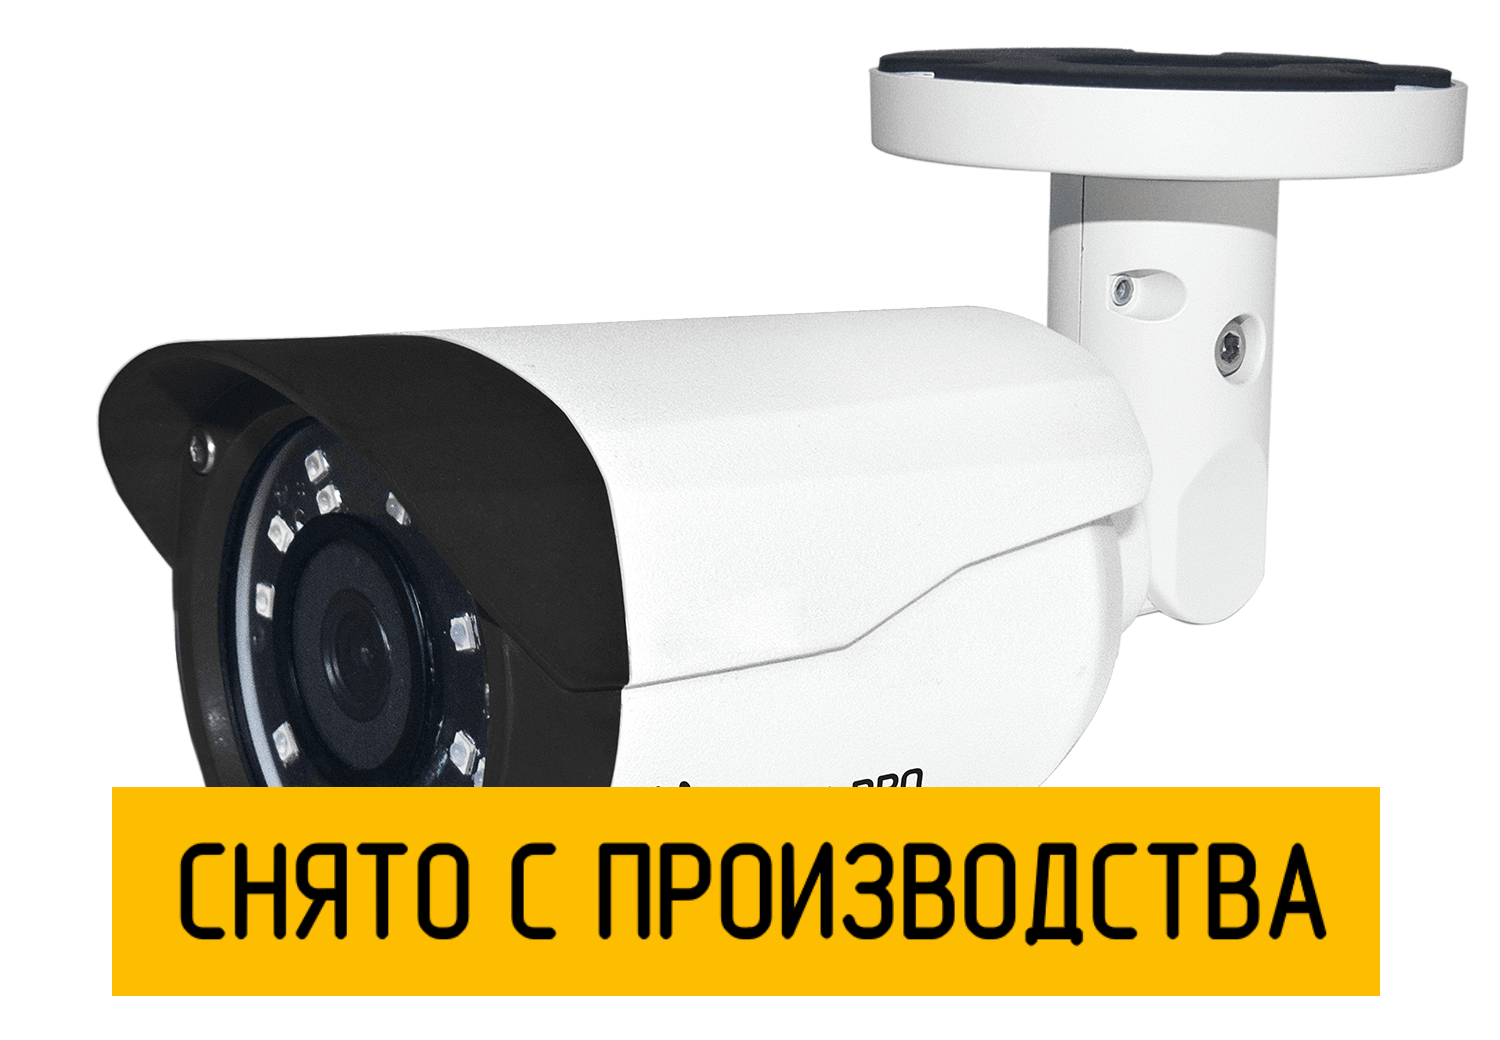 Цилиндрическая IP камера StreetCAM.net 960m